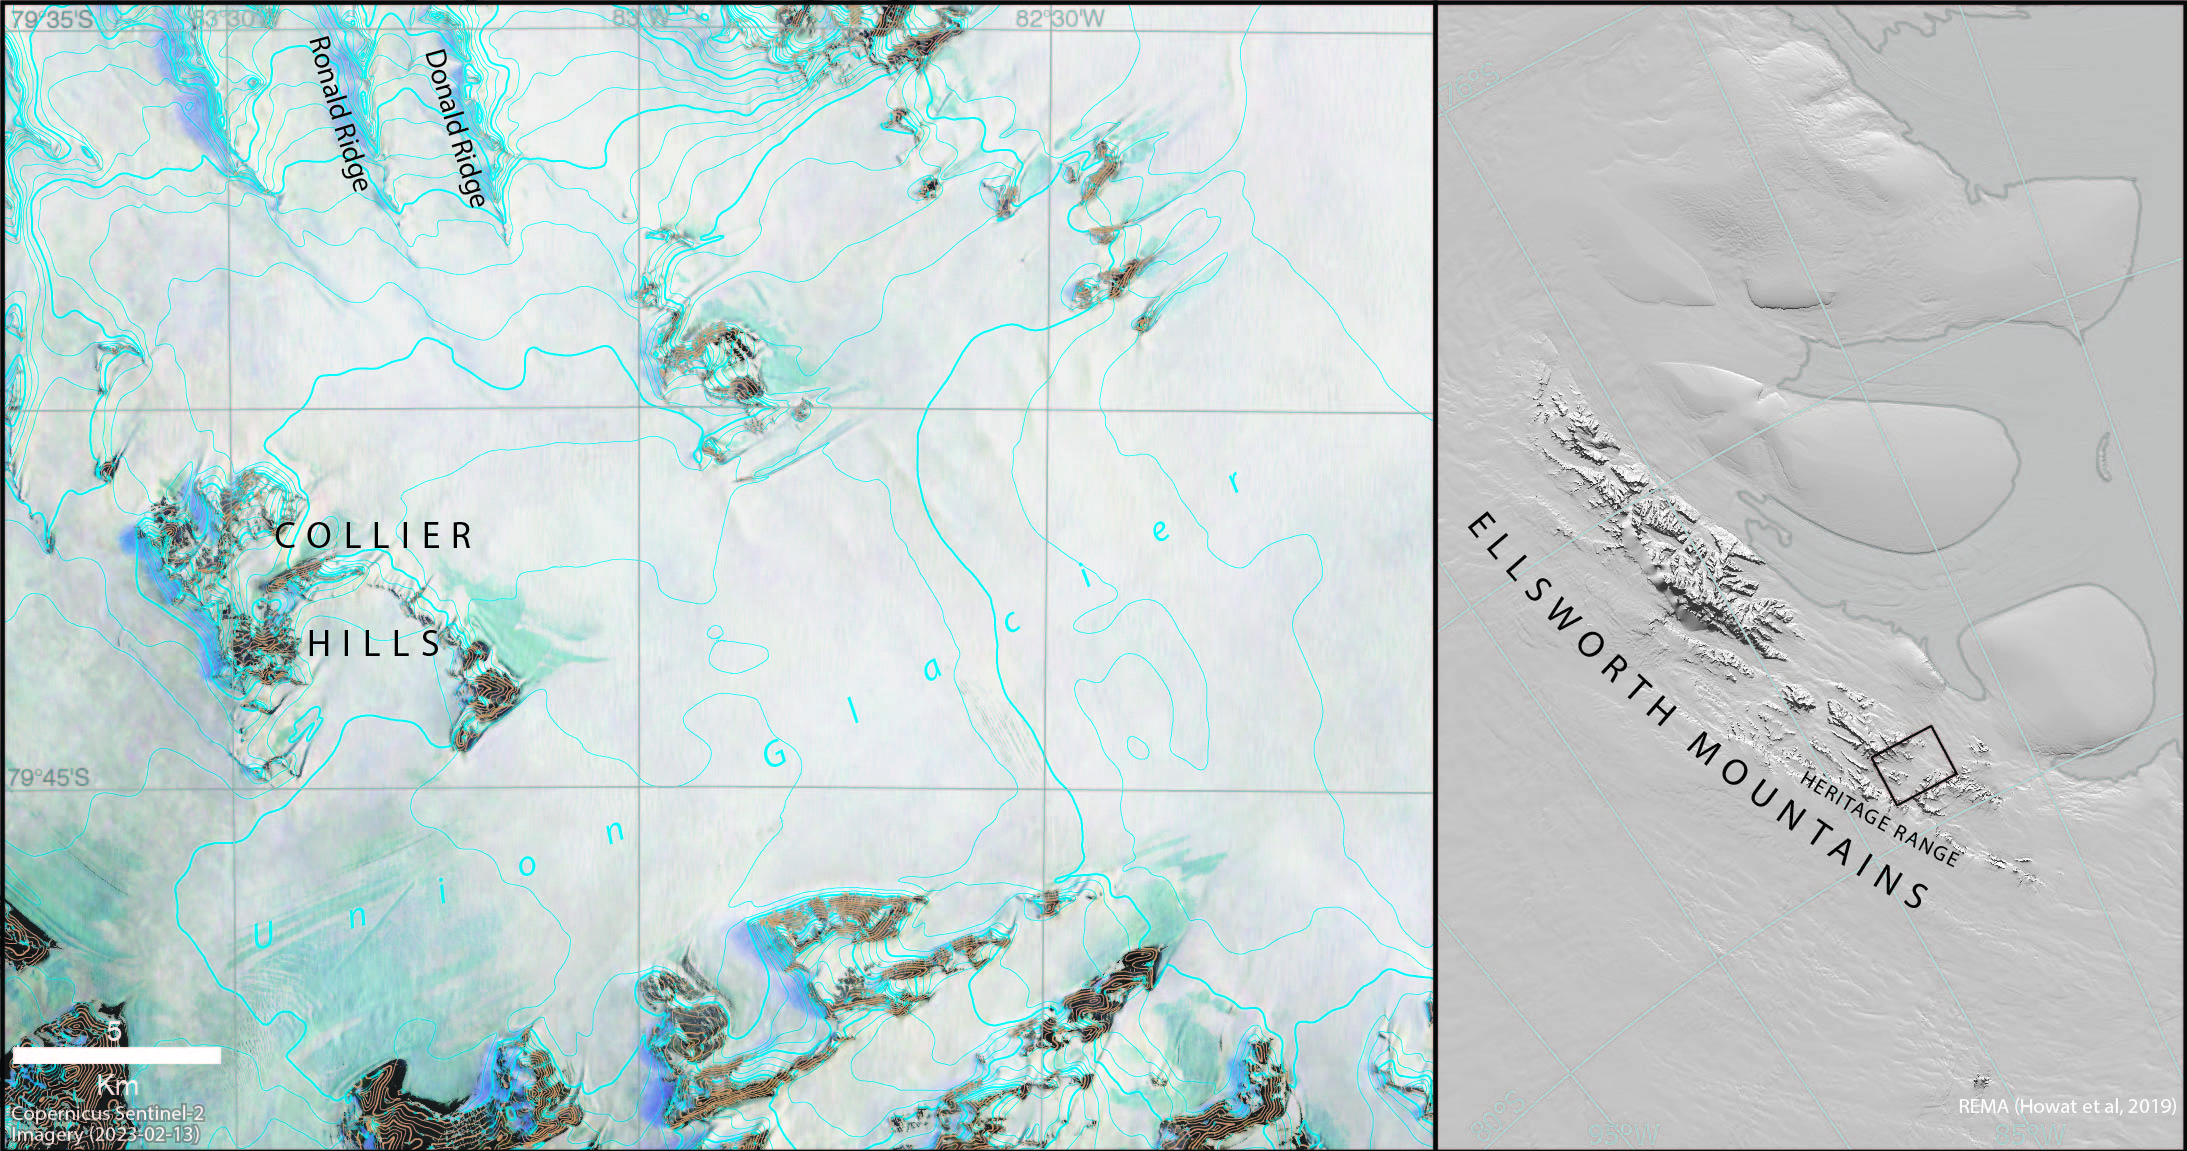 Map showing names across Union Glacier region